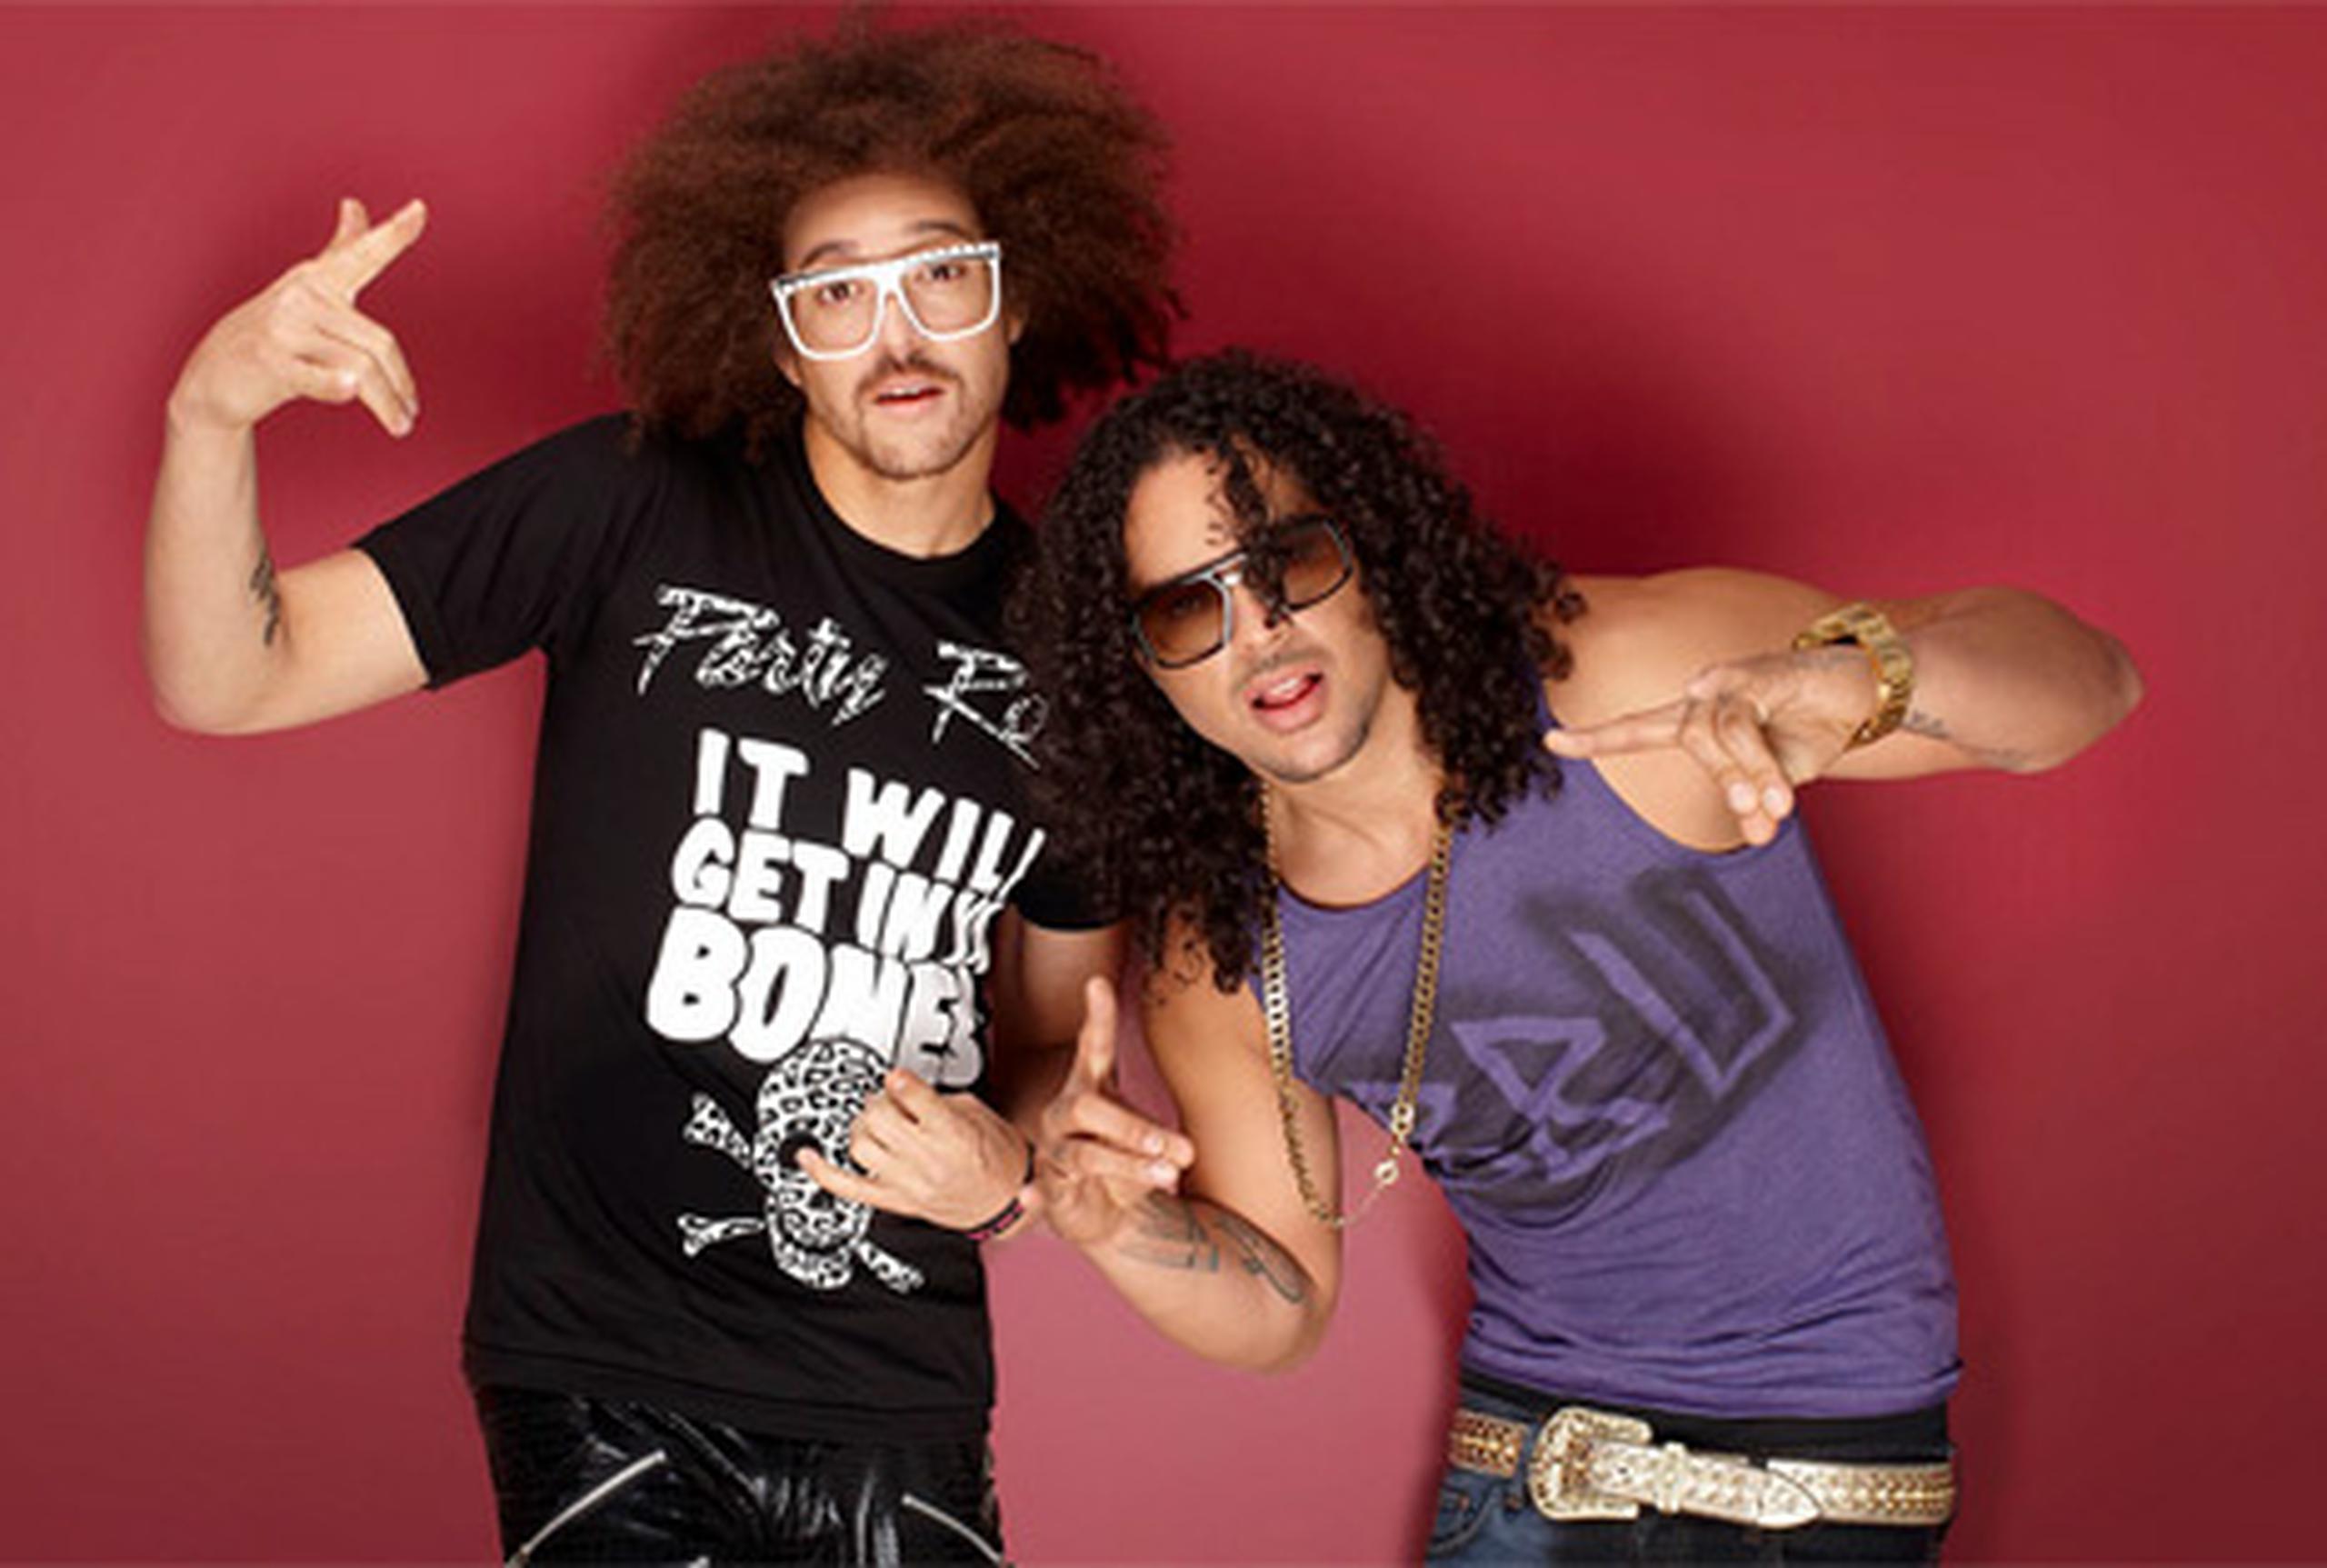 Luego de encontrar un inmenso éxito con su “Party Rock Anthem” y “I’m sexy and I know it”, el dúo LMFAO no volvió a encontrar esa magia y el grupo terminó rompiéndose durante el 2012.